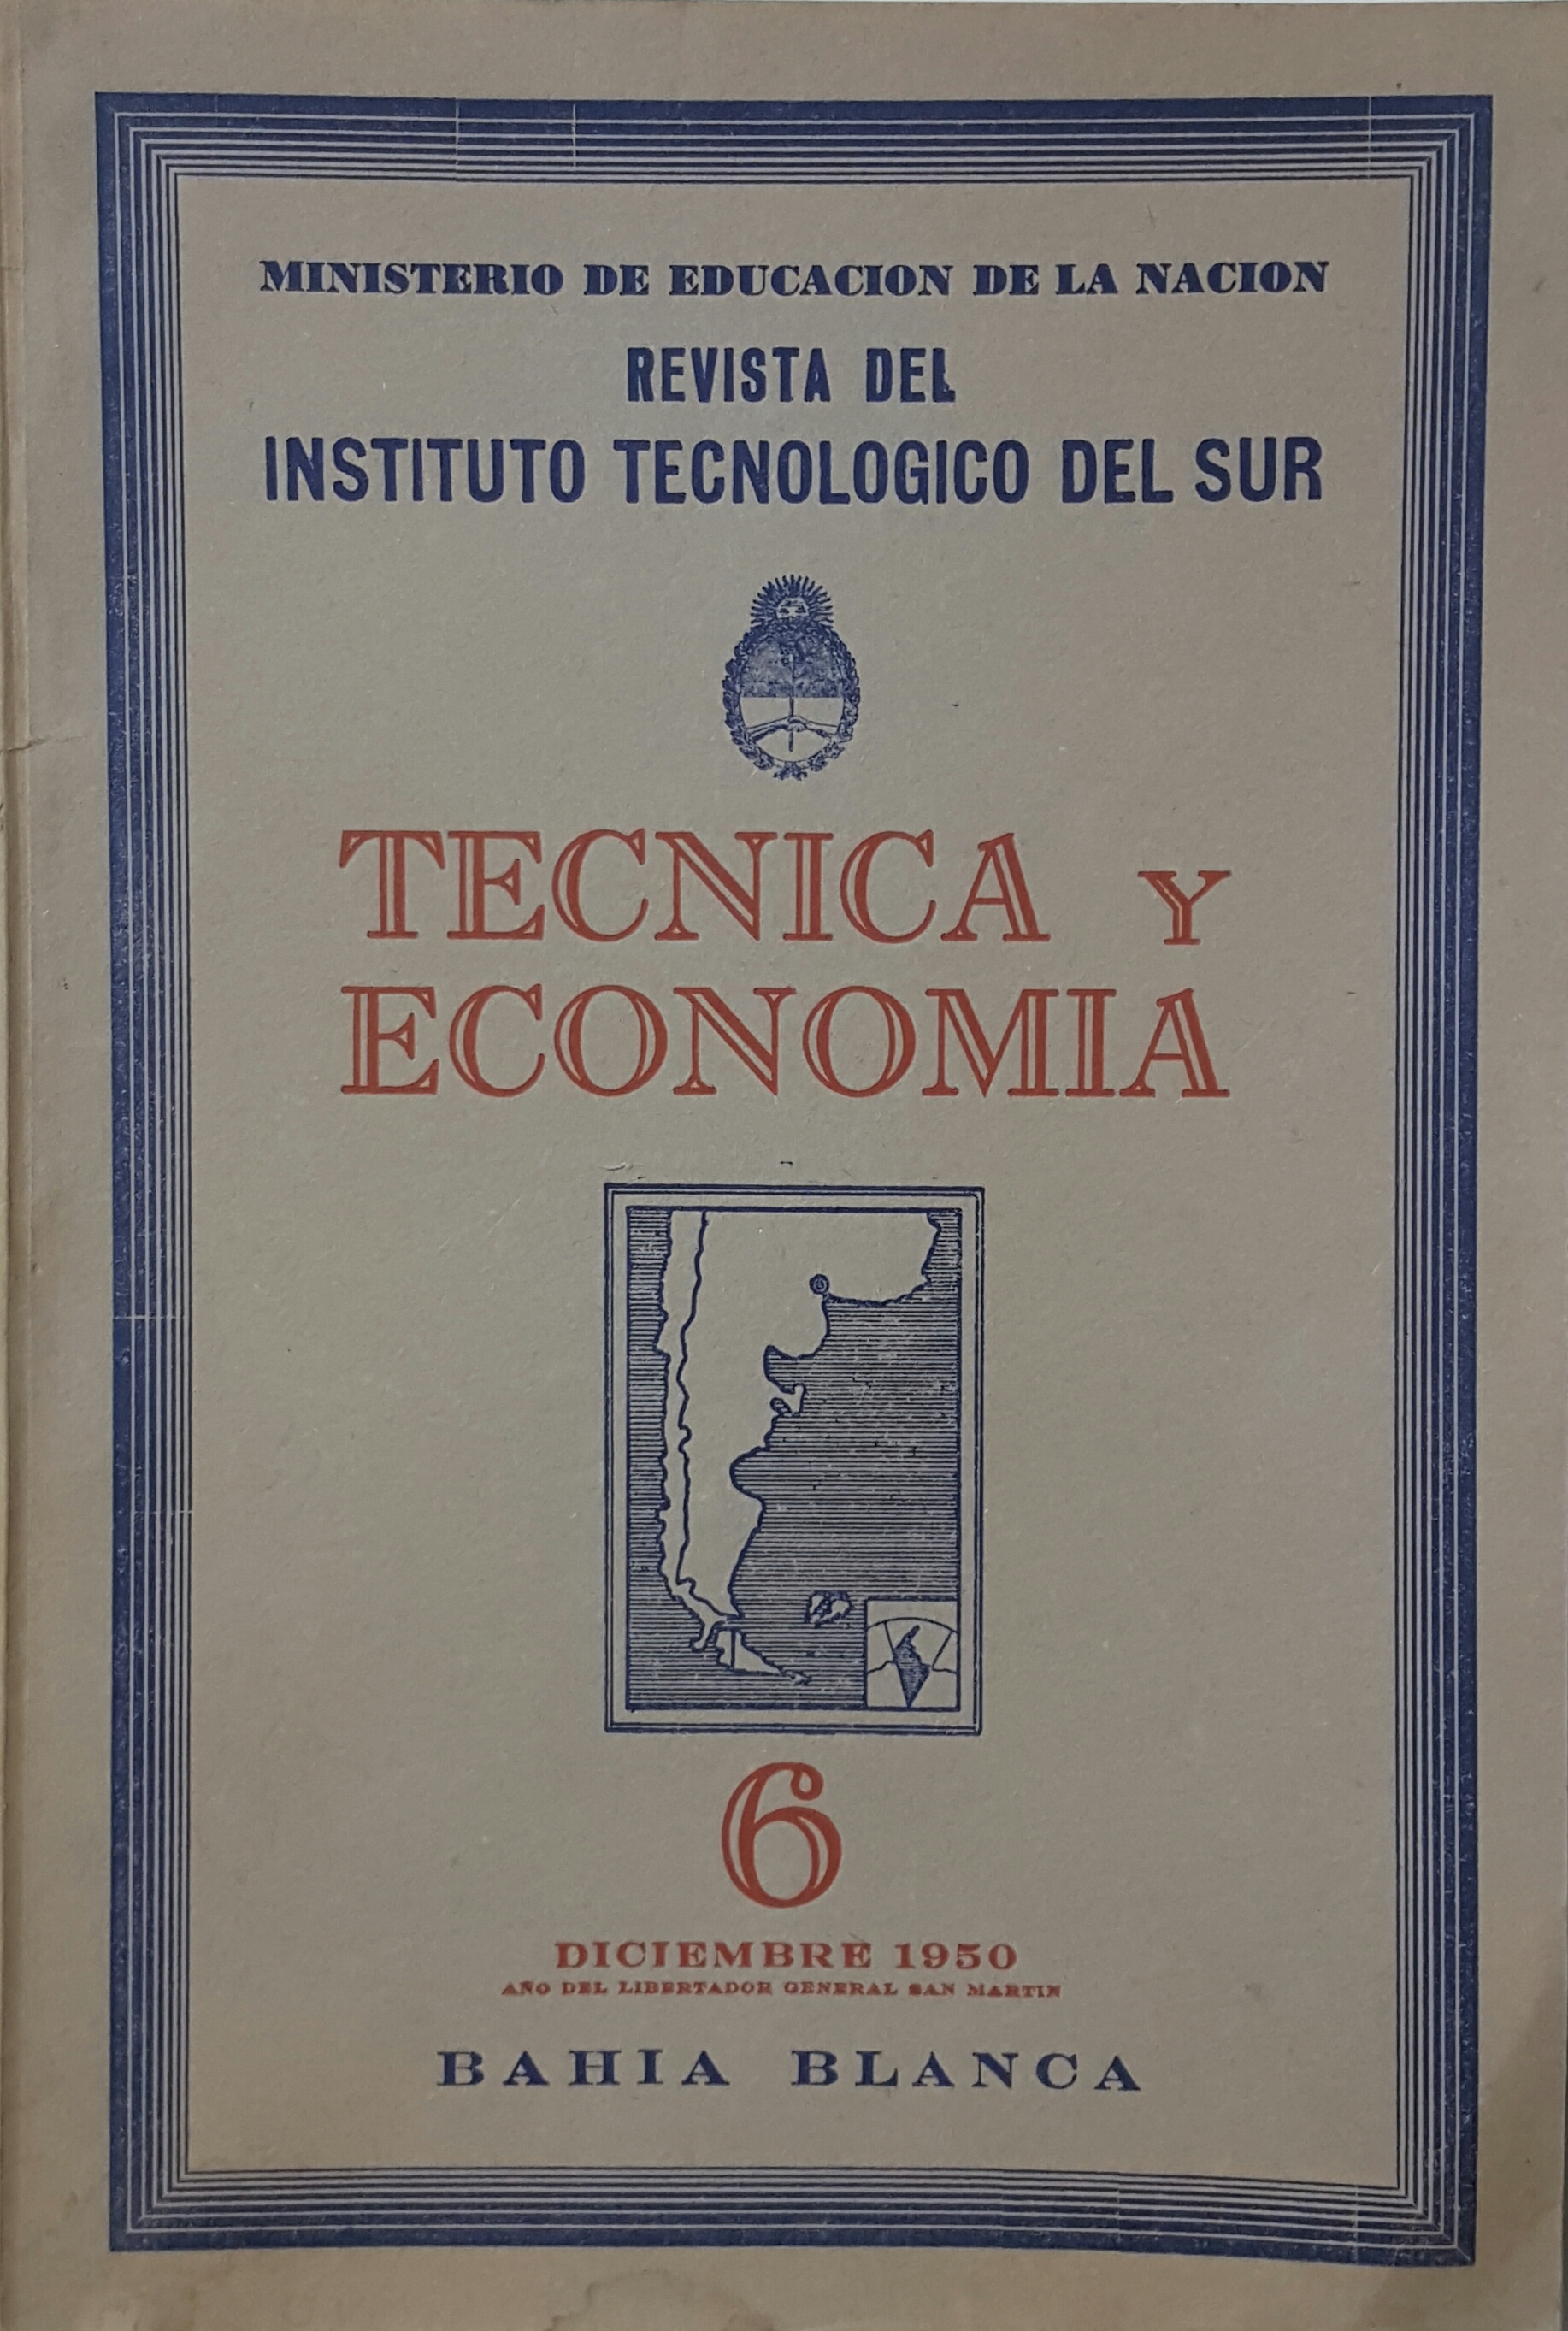 					Ver Vol. 2 Núm. 6 (1950): Técnica y Economía
				